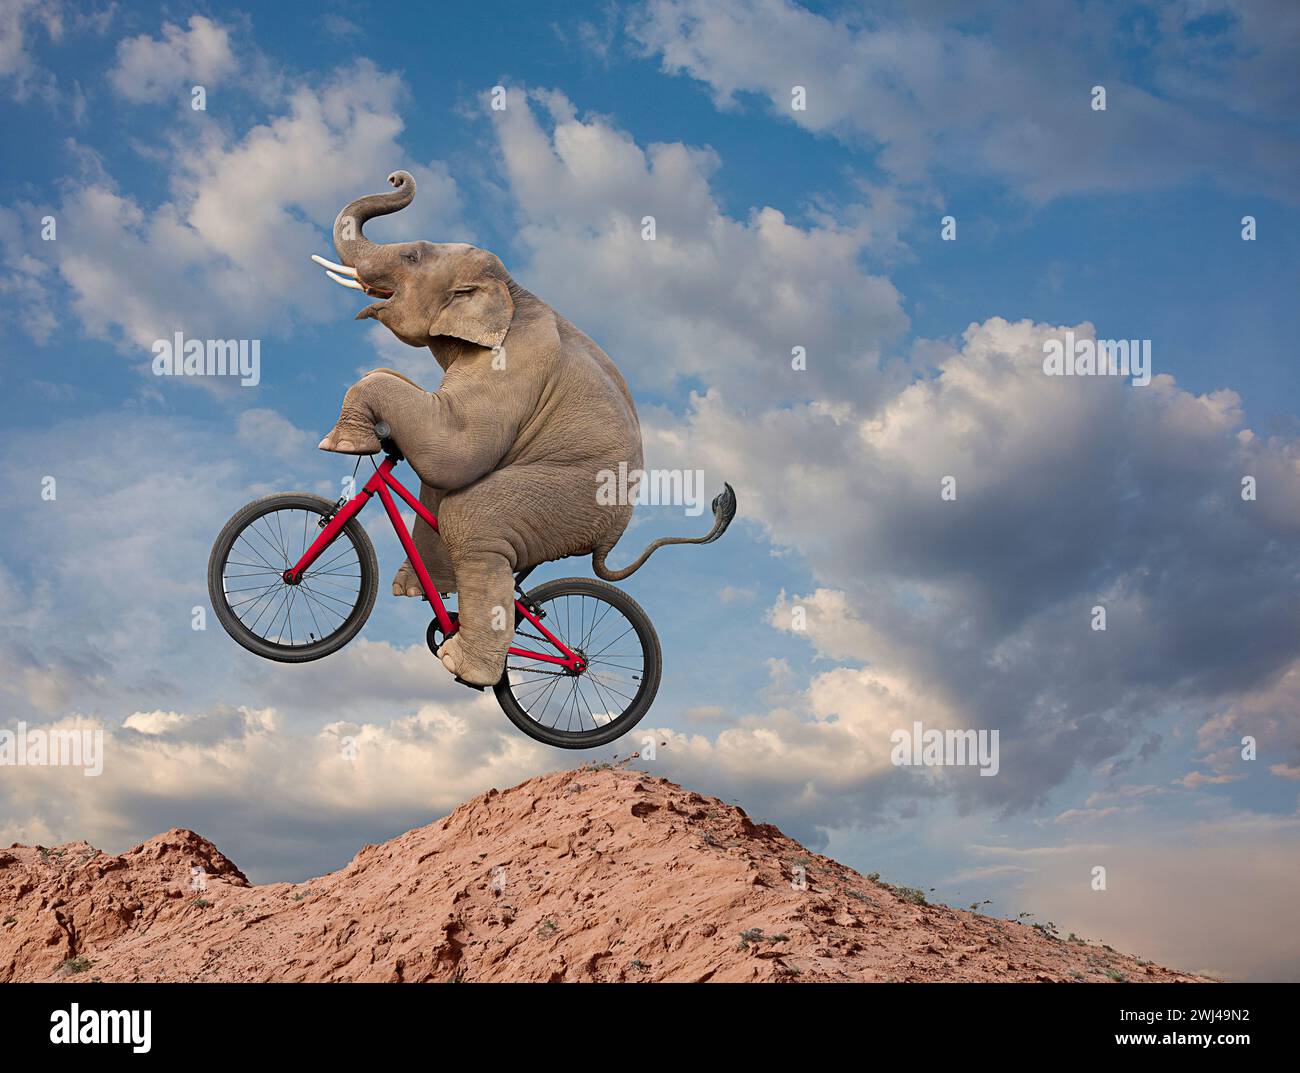 Un éléphant drôle monte un vélo de montagne dans une image sur la taille inattendue, la compétence et l'agilité. Banque D'Images